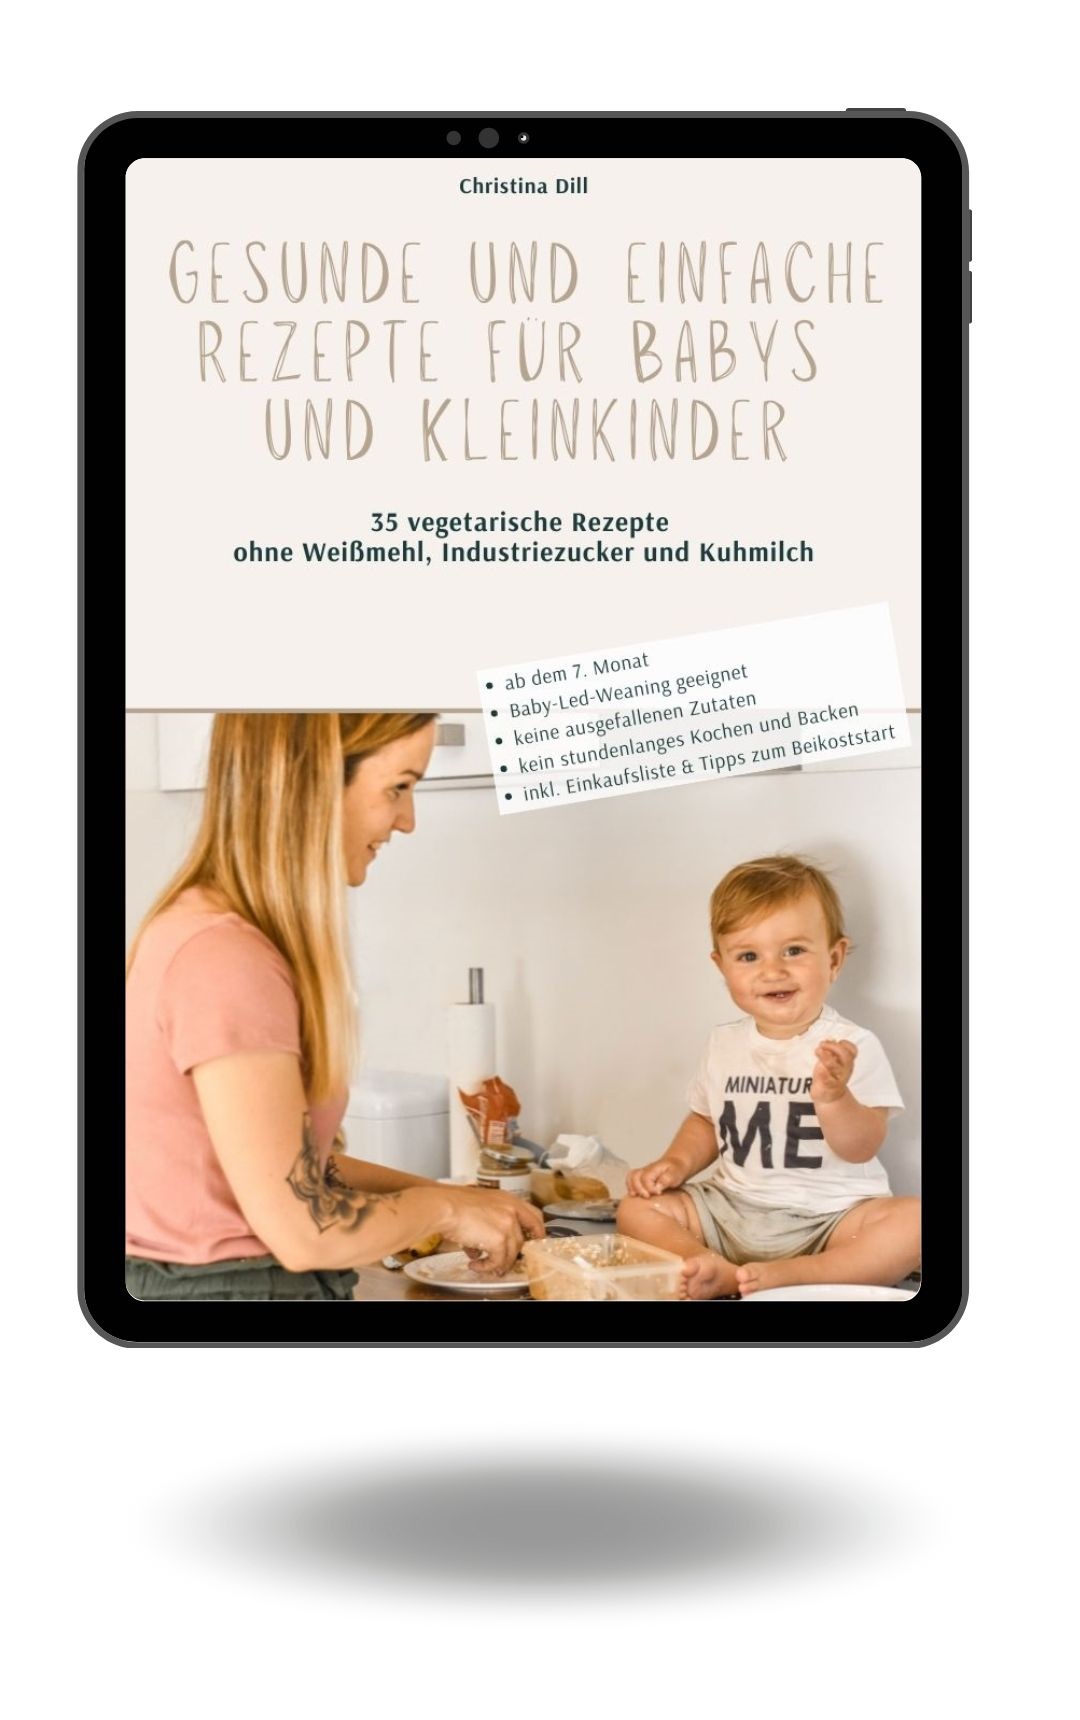 Gesunde und einfache Rezepte für Babys und Kleinkinder